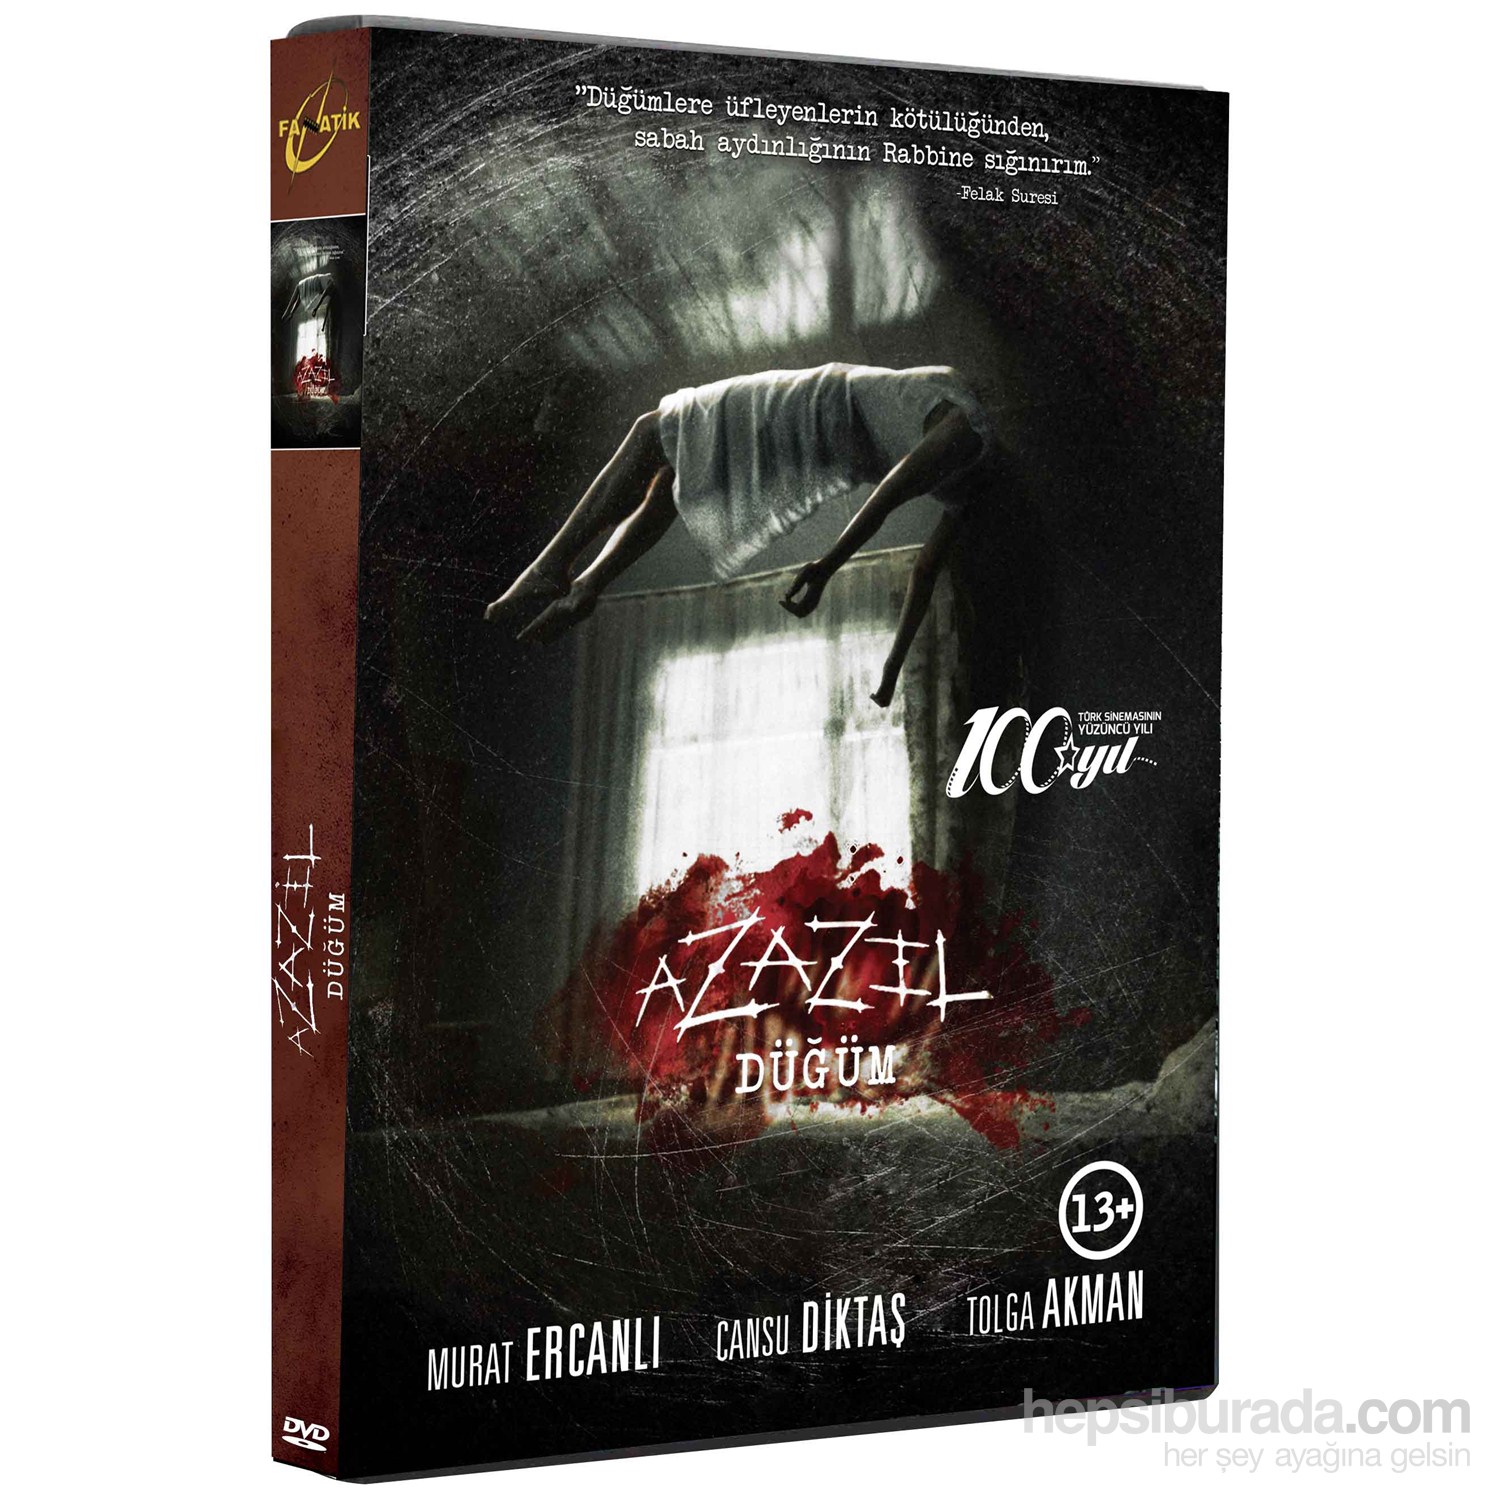 Azazil (DVD)